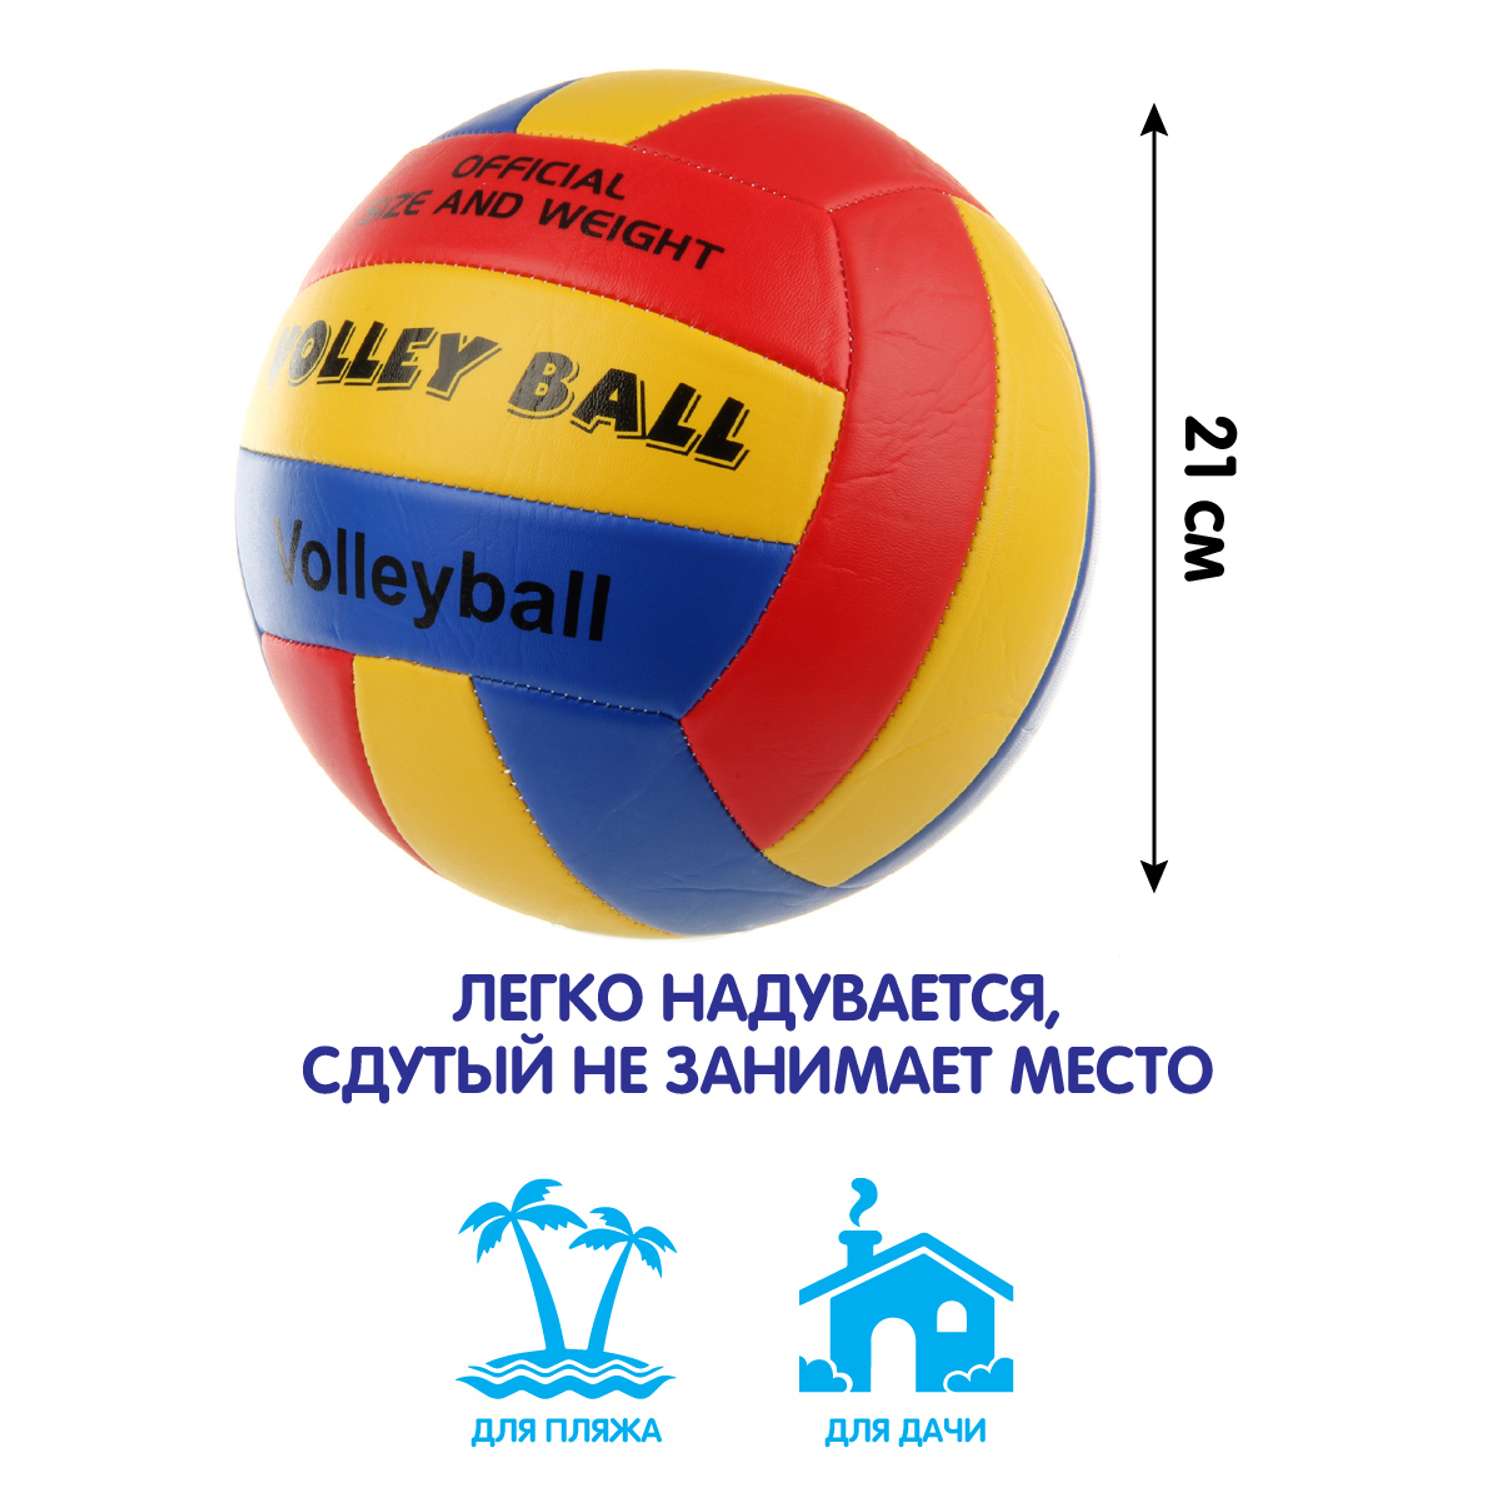 Мяч Veld Co волейбольный 21 см. - фото 2